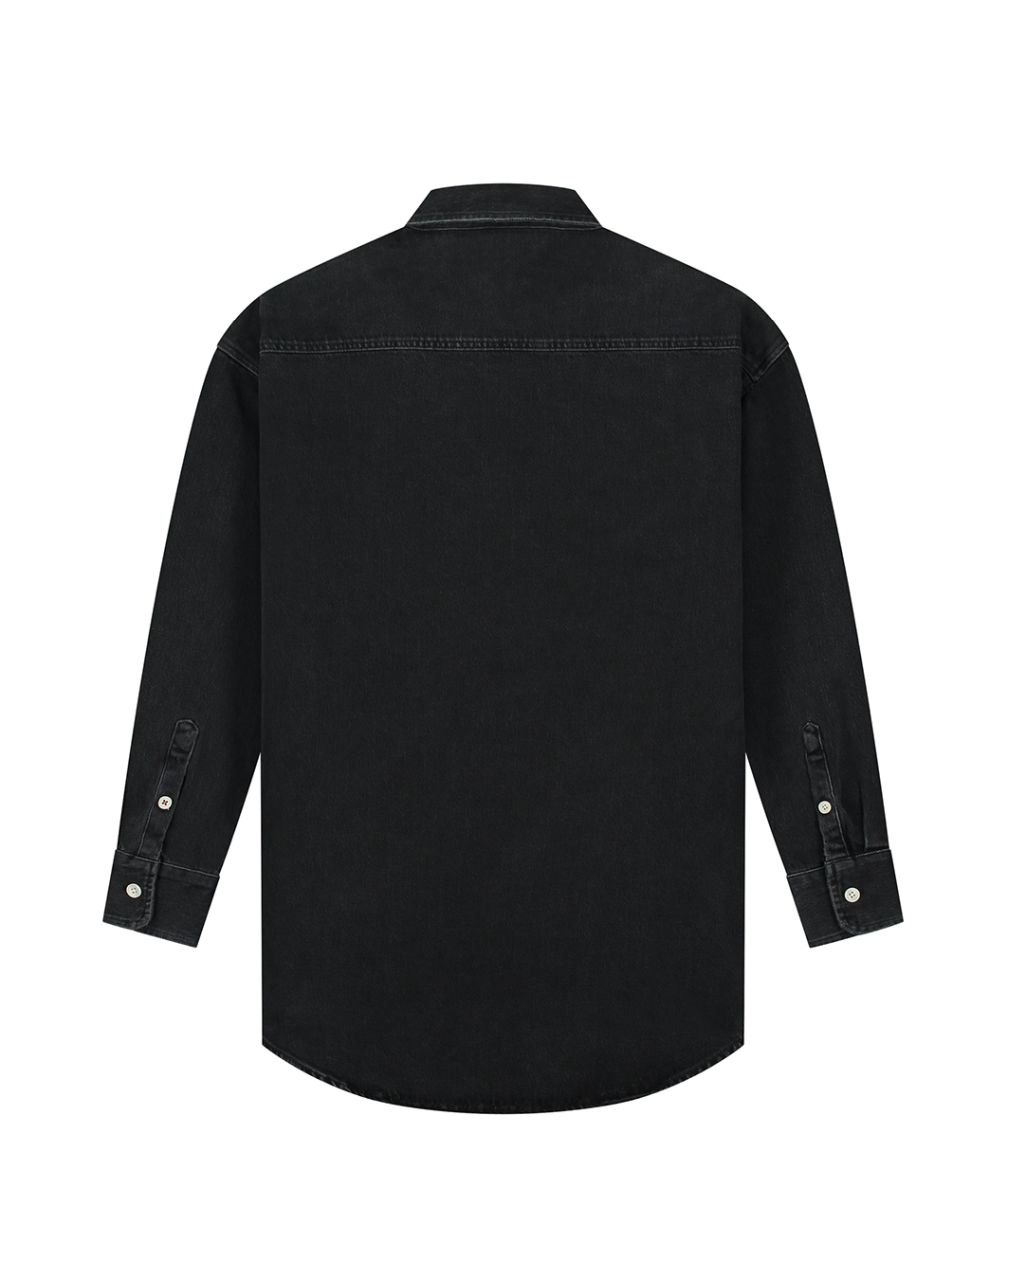 Selina Black Shirt Washed Black XS